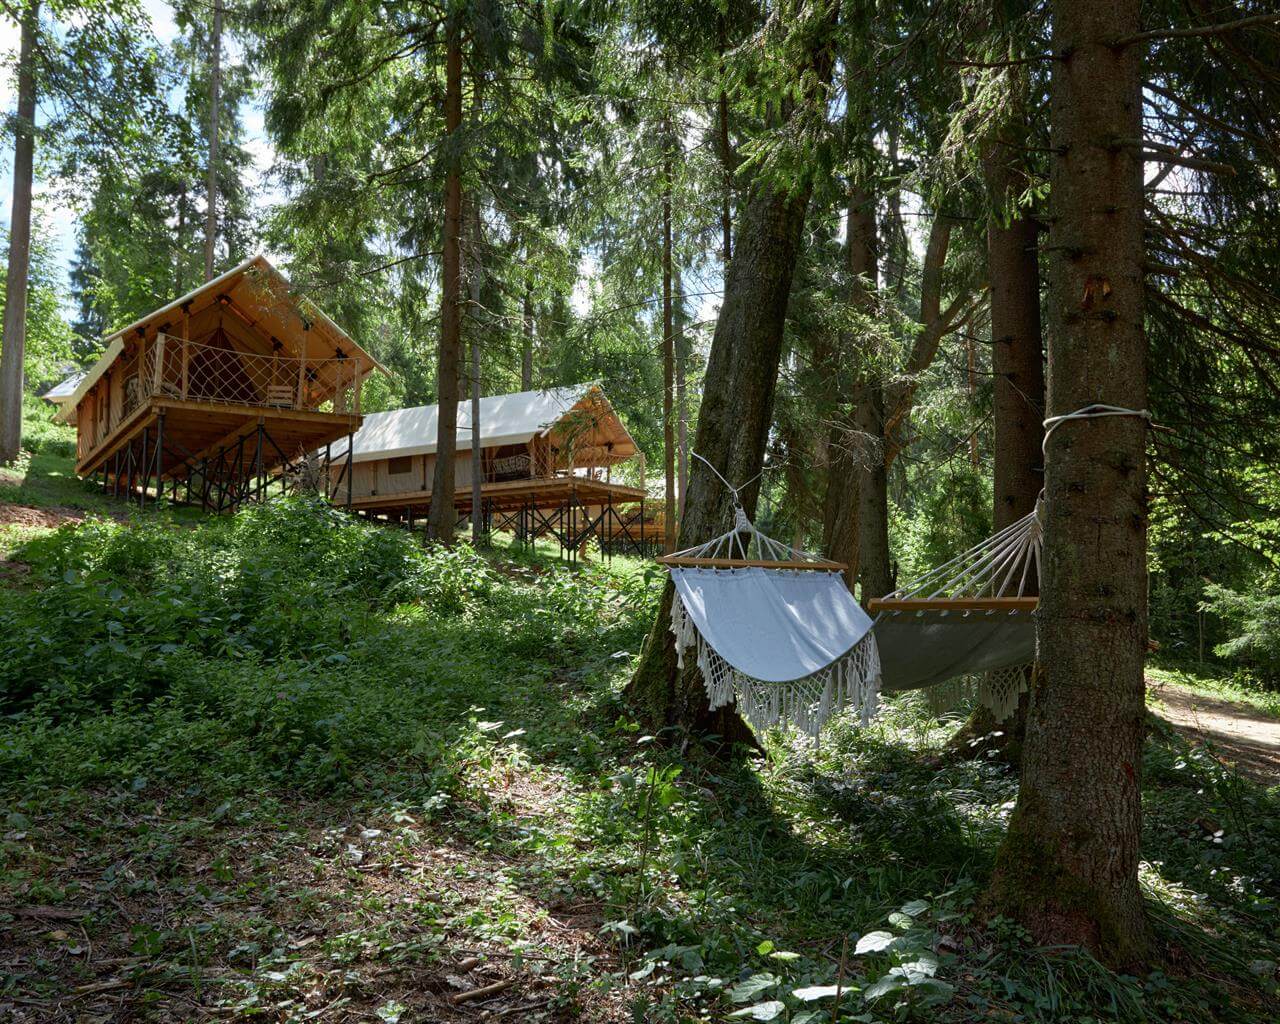 Гамак между деревьями. Сафари-палатки для отдыха.